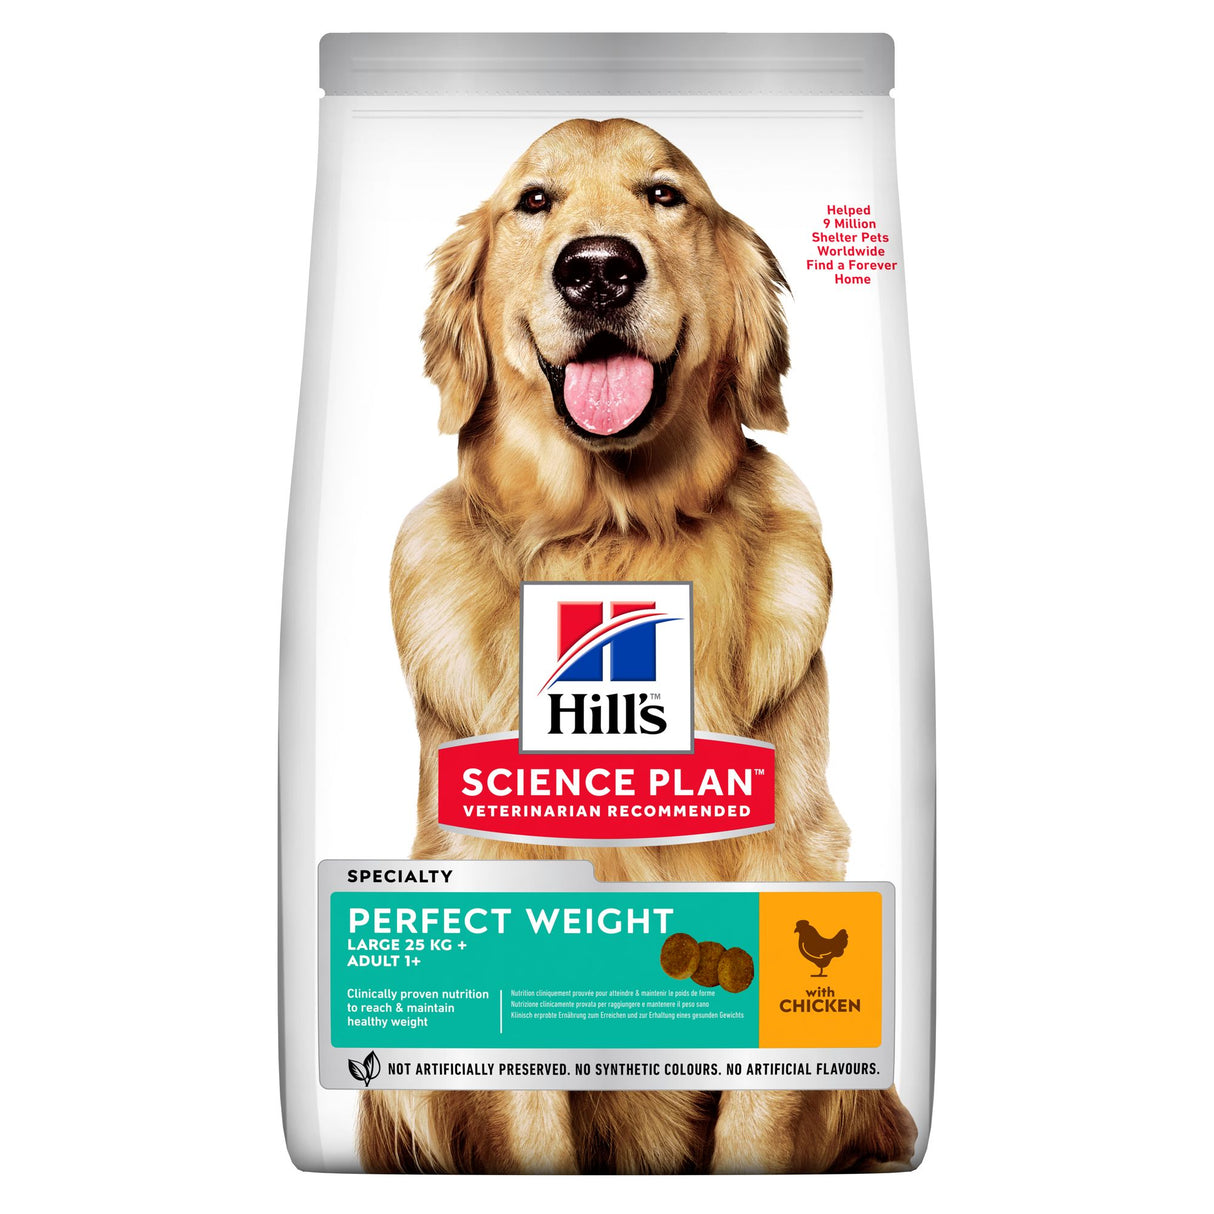 Hill's Science Plan Perfect Weight er et førsteklasses hundefoder formuleret til at fremme optimal vægtstyring og generel sundhed. Specielt udformet af Hills Science Plan, denne ernæringsmæssige Hills Perfect vægt tørfoder til voksne store hunde m/ kylling sikrer, at din hundekammerat vedligeholder